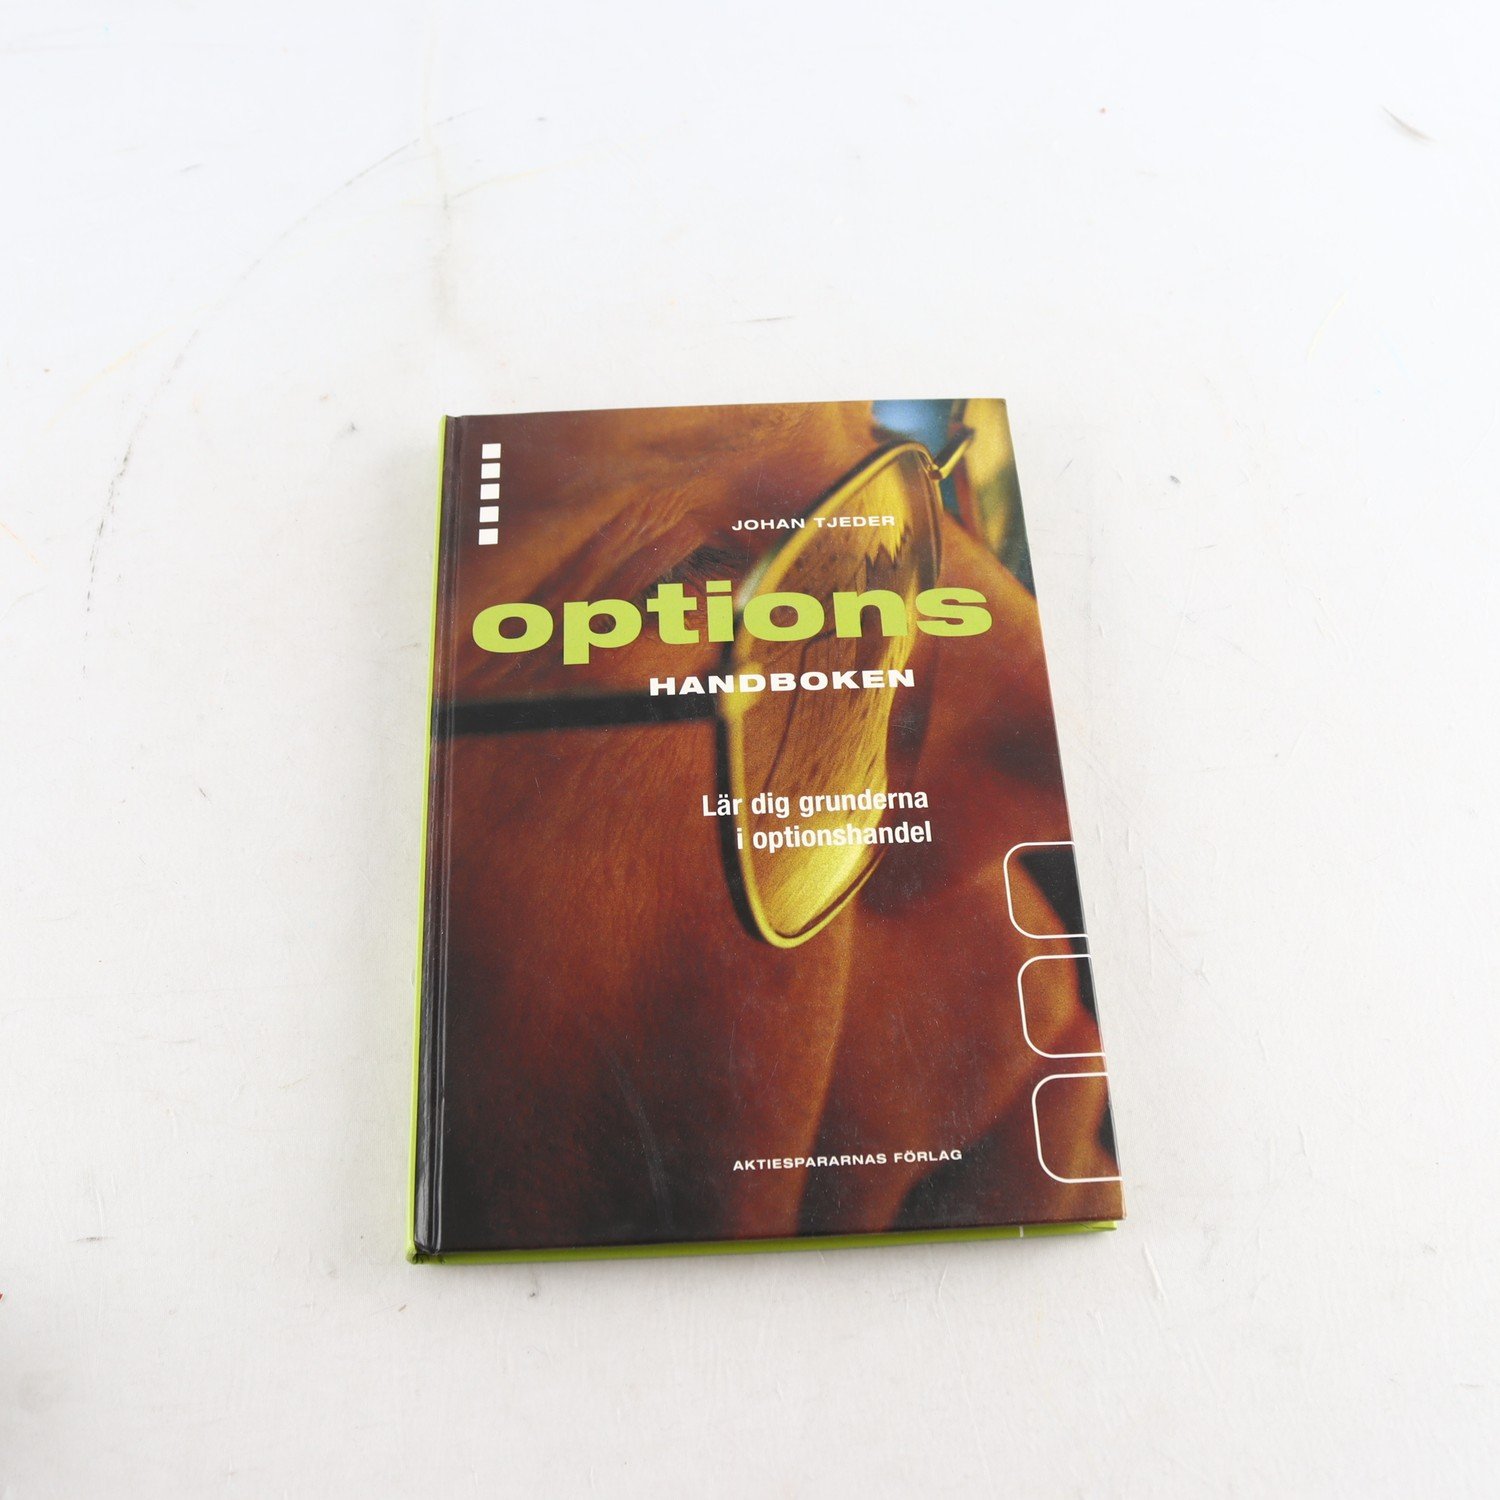 Optionshandboken: Lär dig grunderna i optionshandel, Johan Tjeder